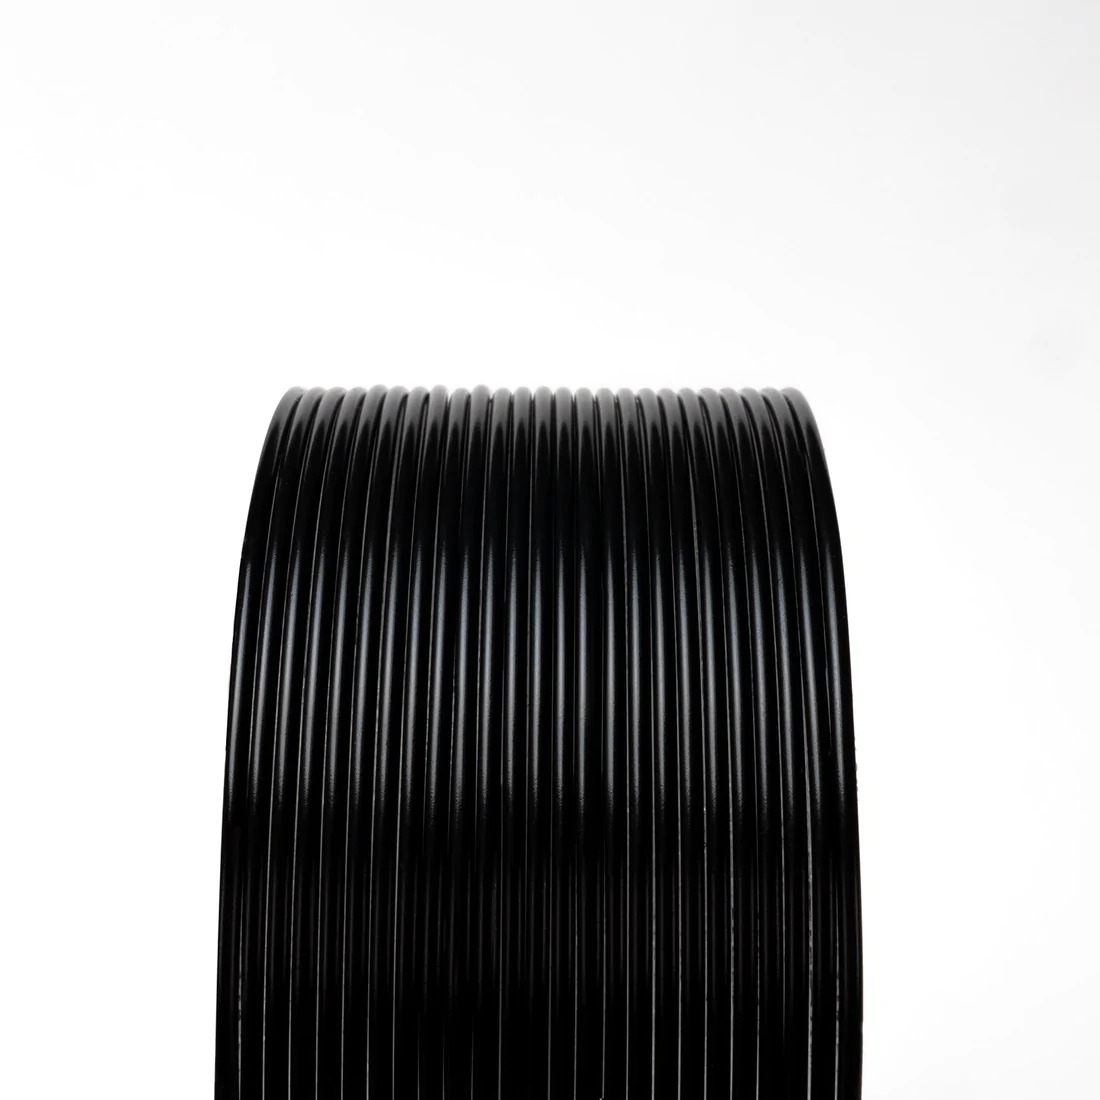 Black Opaque (Premium) HTPLA V3 Black 1Kg 1.75mm 3D printing Filament